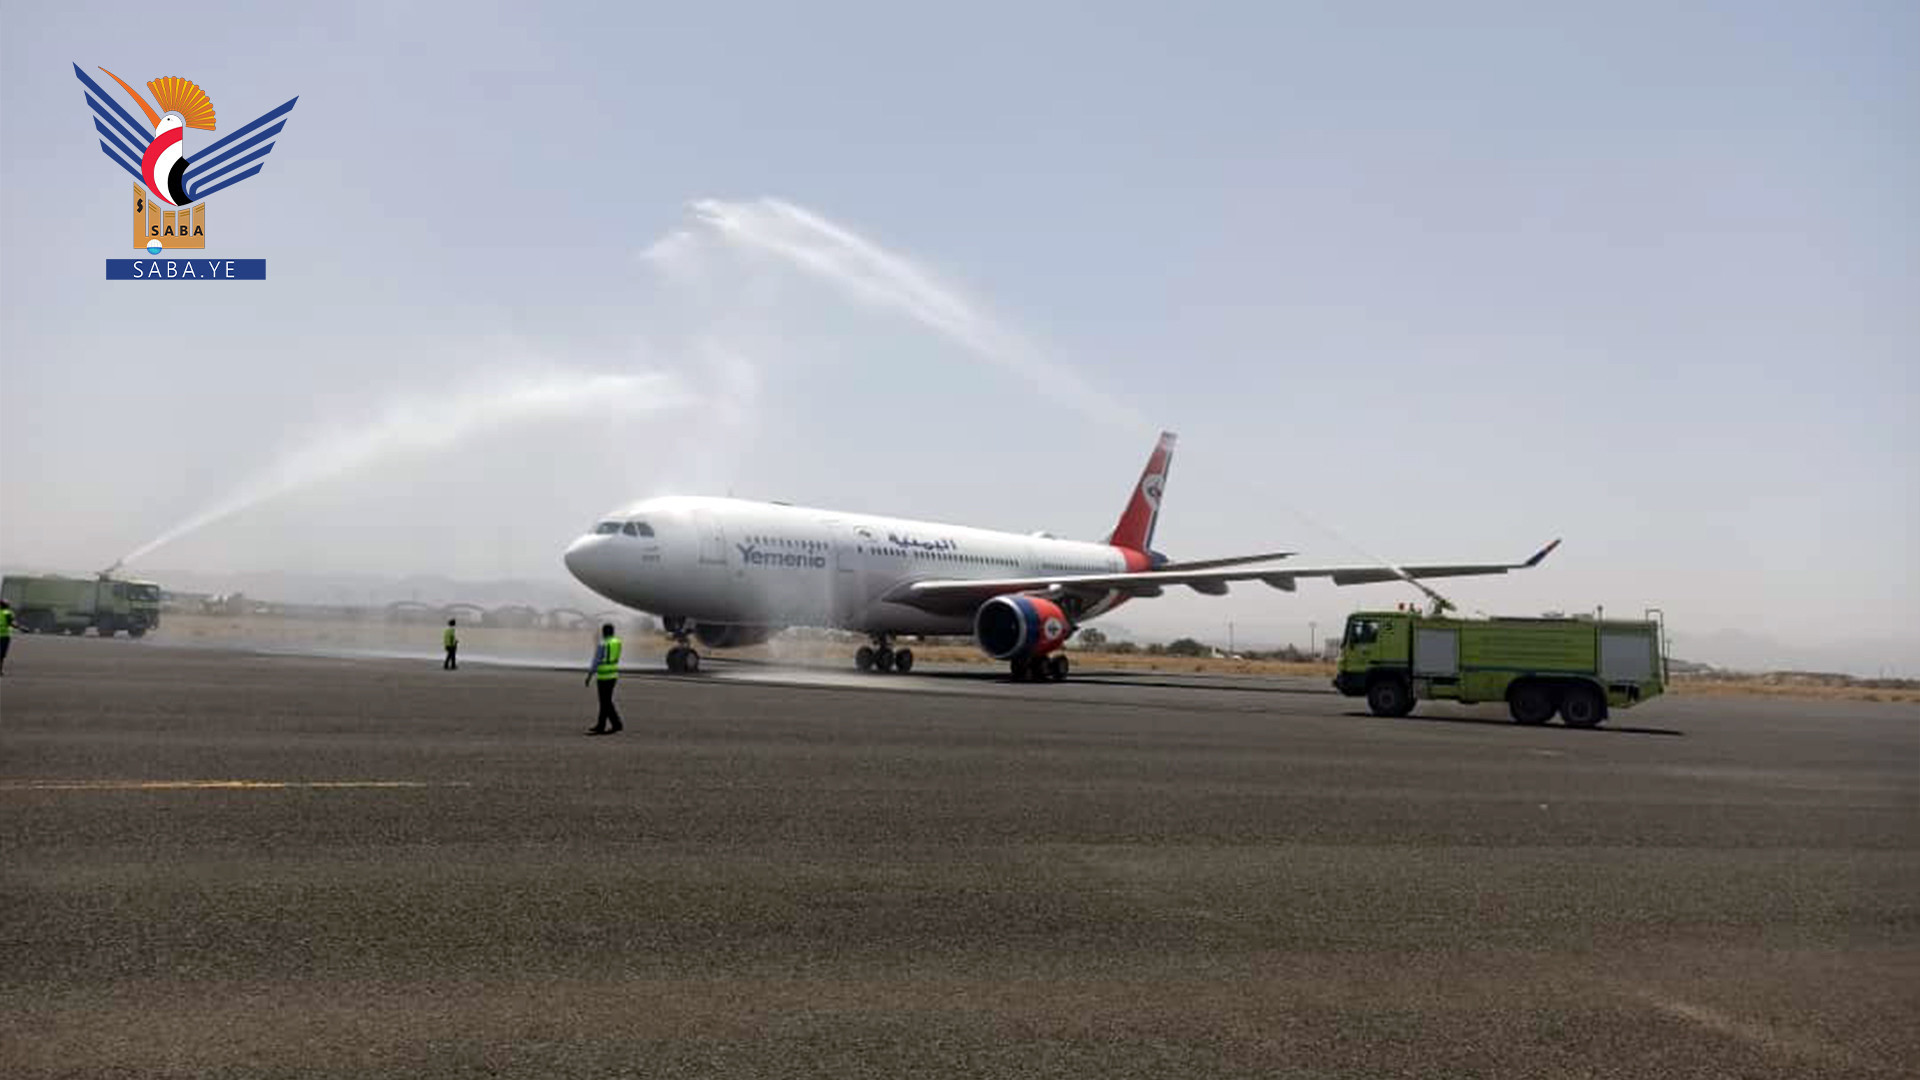 La compagnie aérienne nationale du Yémen lance des travaux avec un nouvel Airbus A330